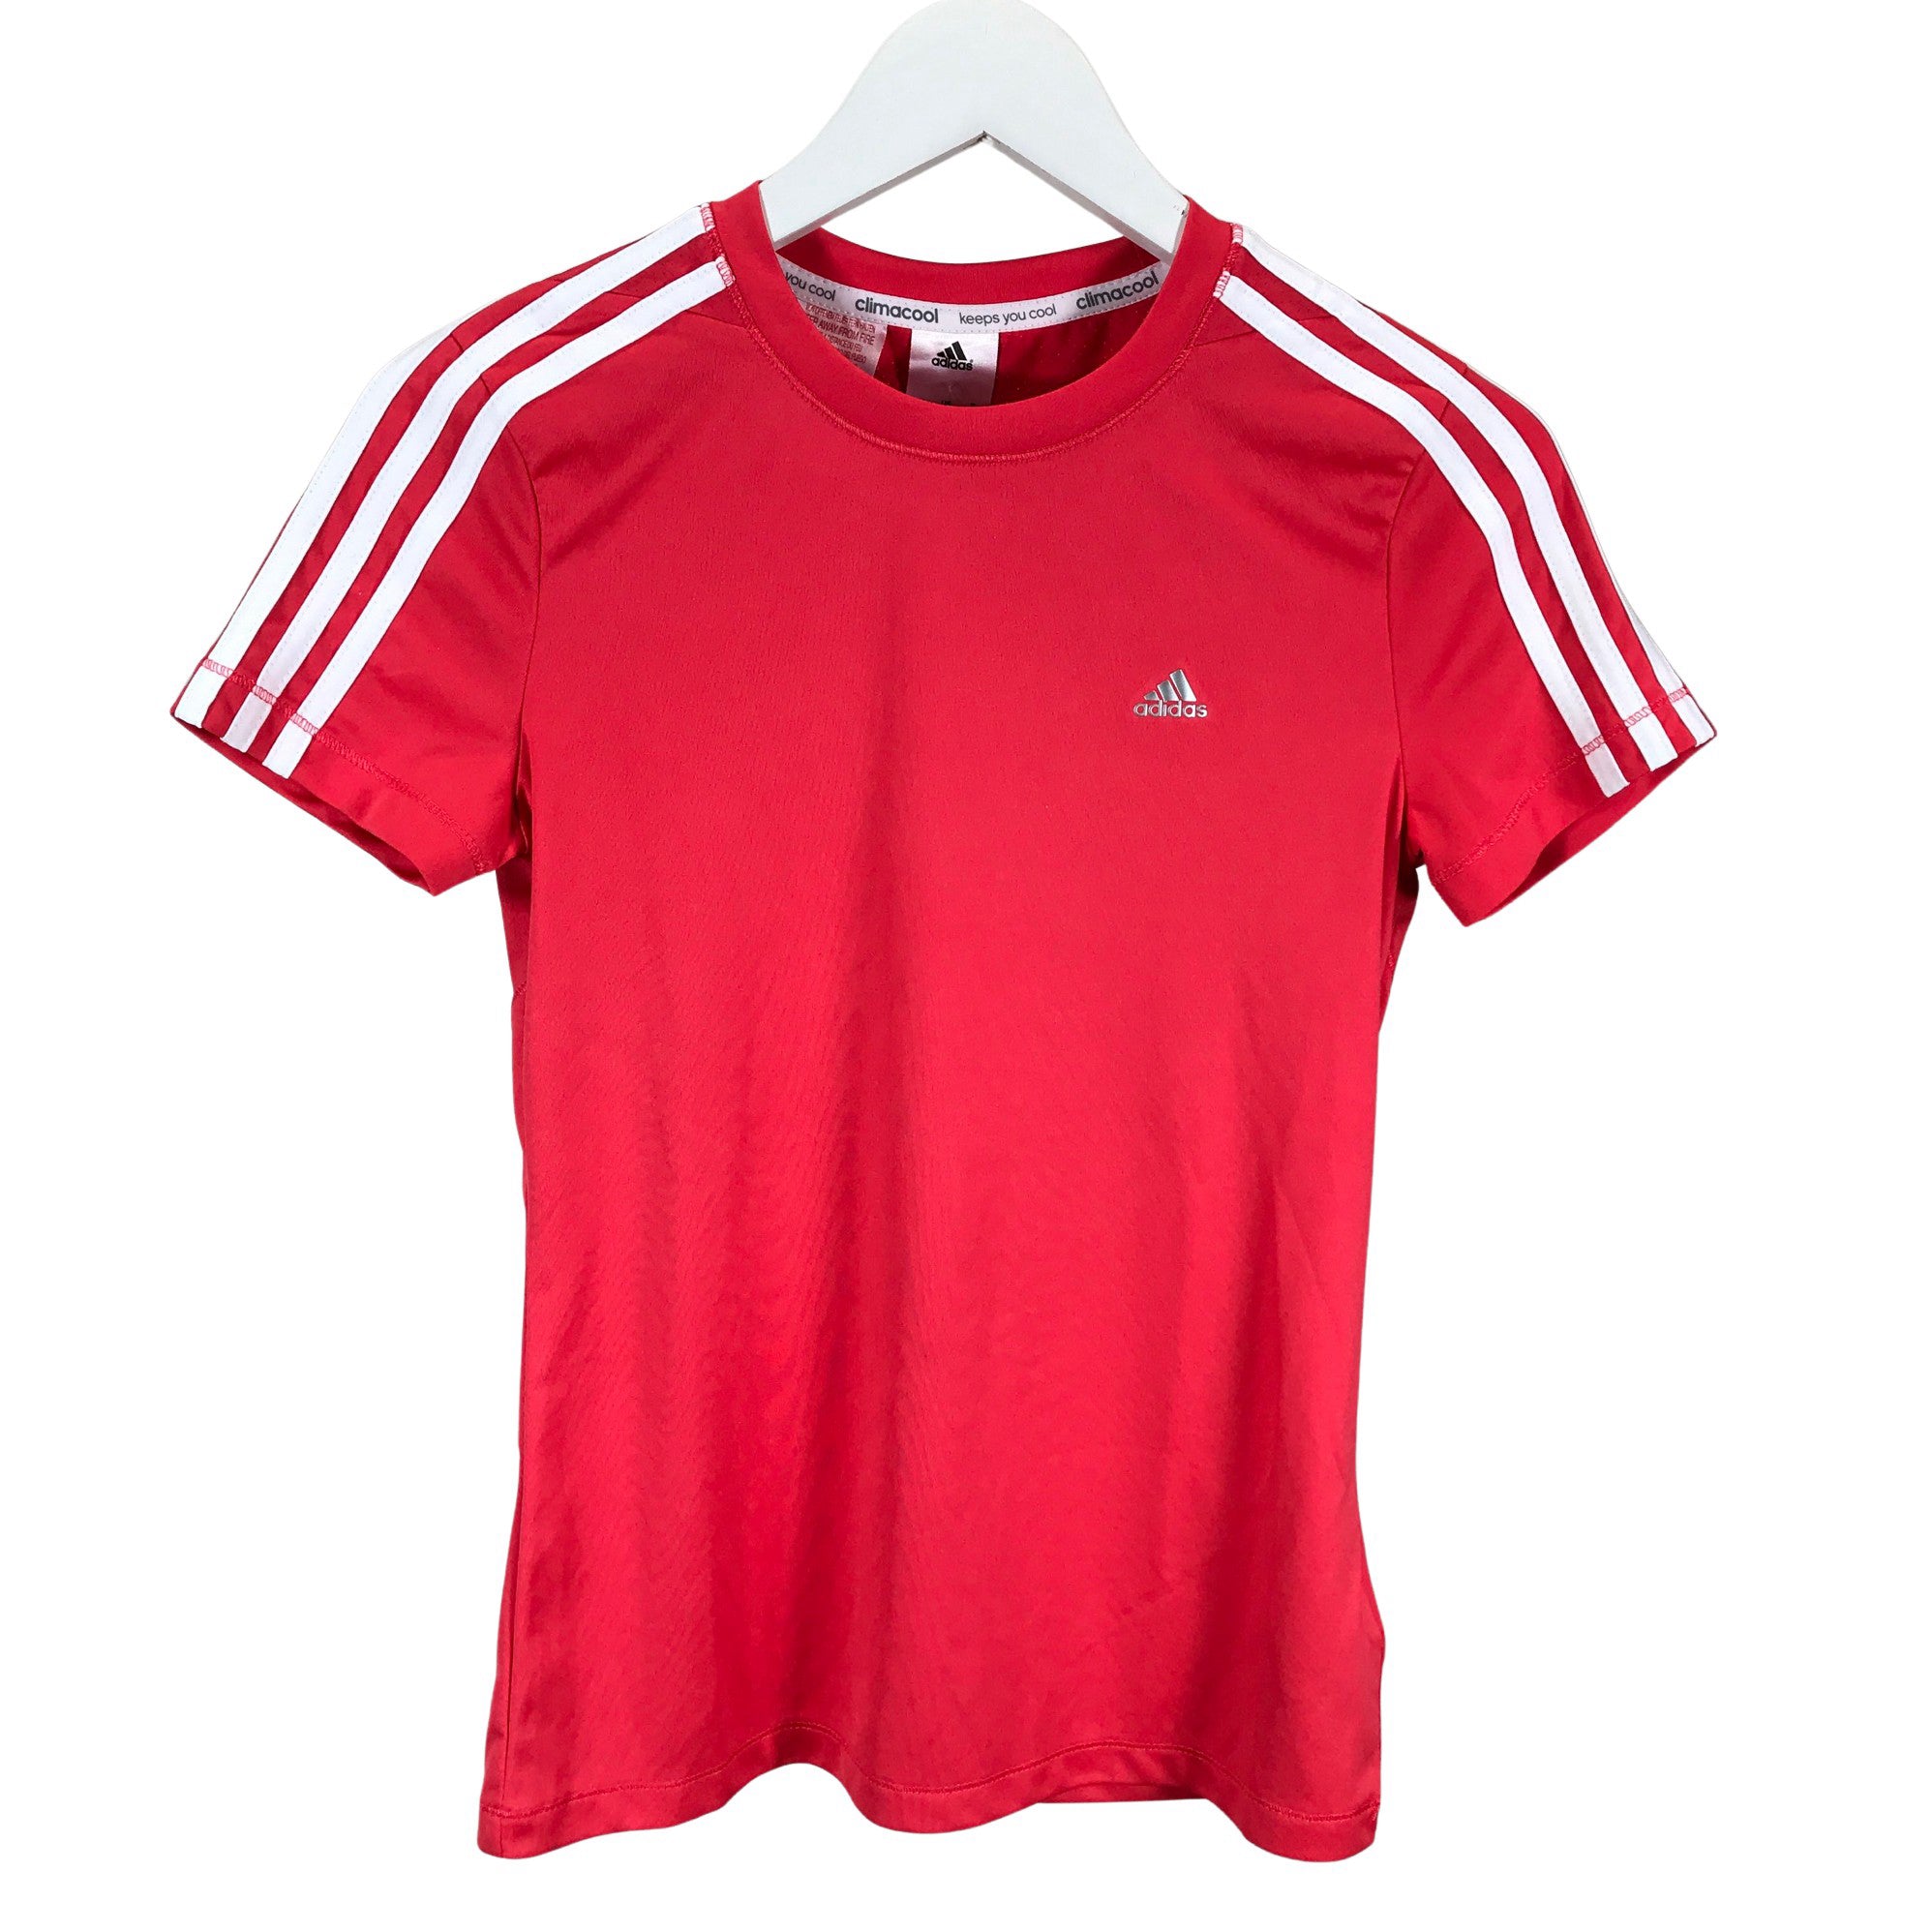 Absoluut Struikelen bal Girls' Adidas Sports shirt, lyhyet hihat, size 158 - 164 (Pink) | Emmy